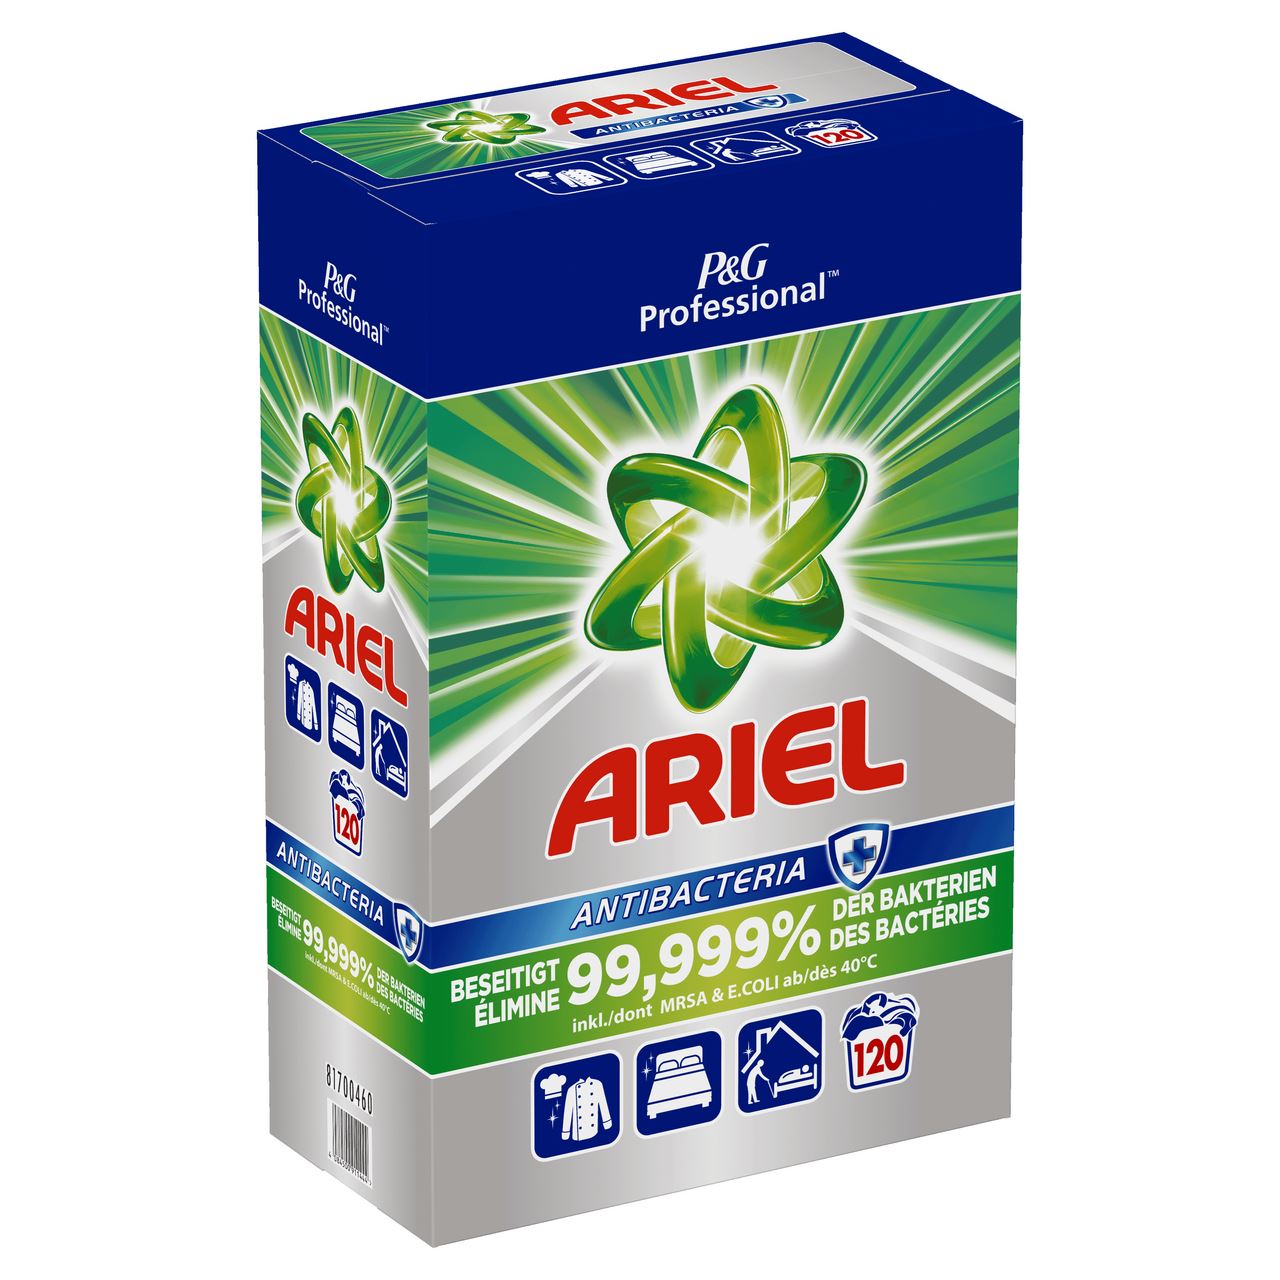 Lessive en poudre antibacterien 120 doses Ariel Professional